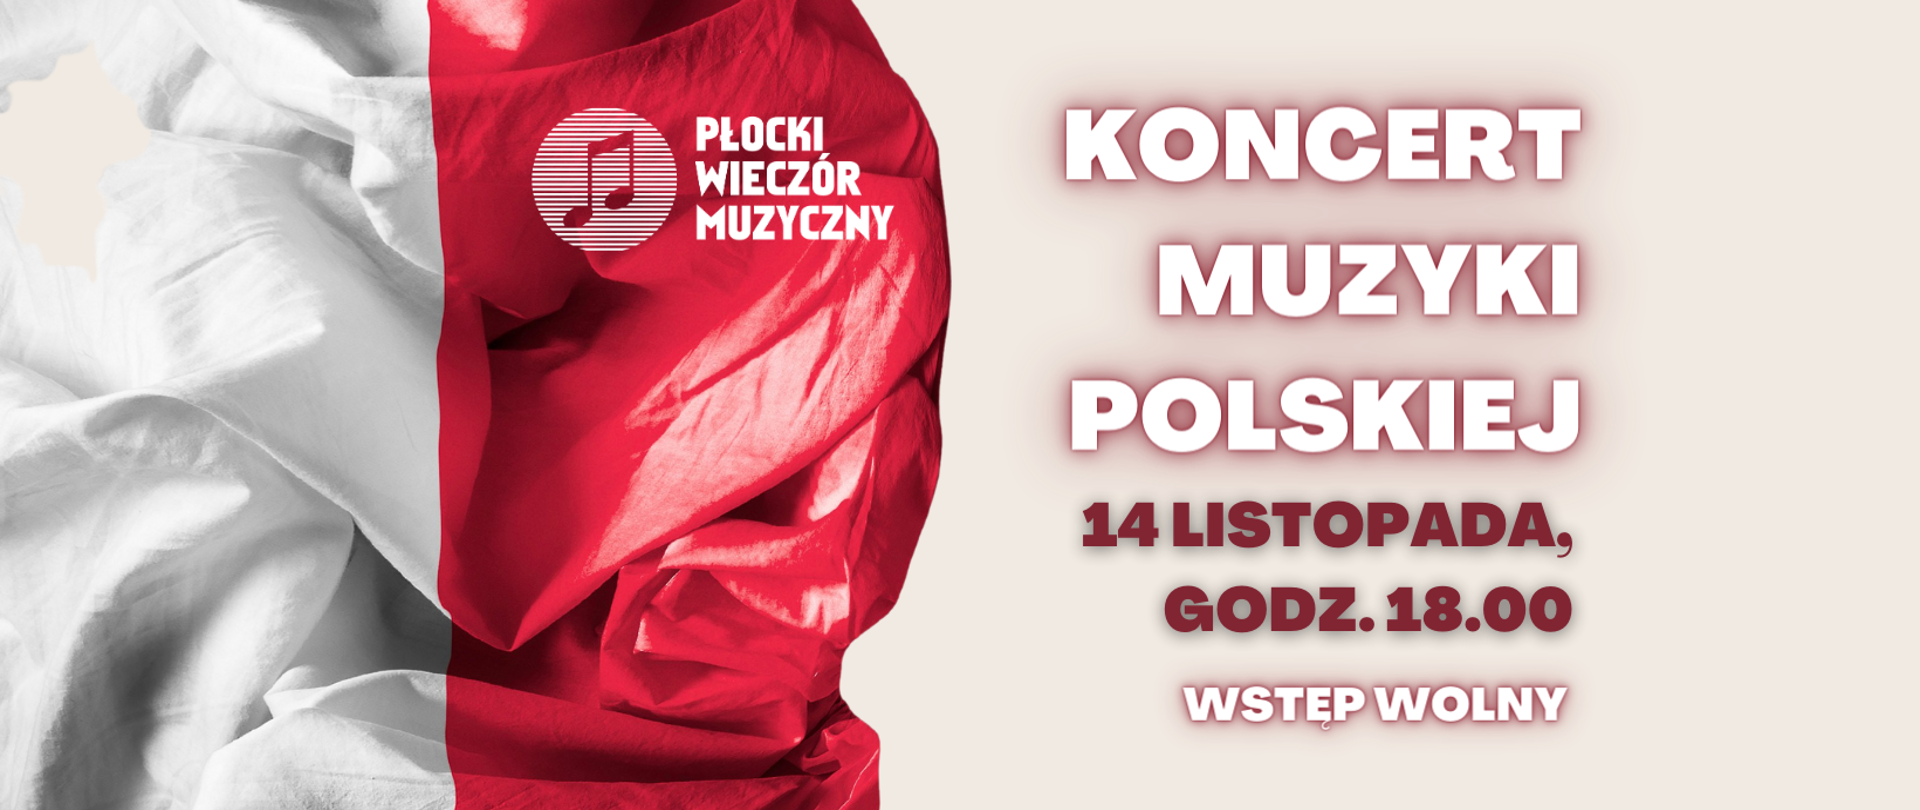 Flaga biało-czerwona po lewej stronie, na jej czerwonej części logo Płockiego Wieczoru Muzycznego. Po prawej stronie tytuł koncert i data